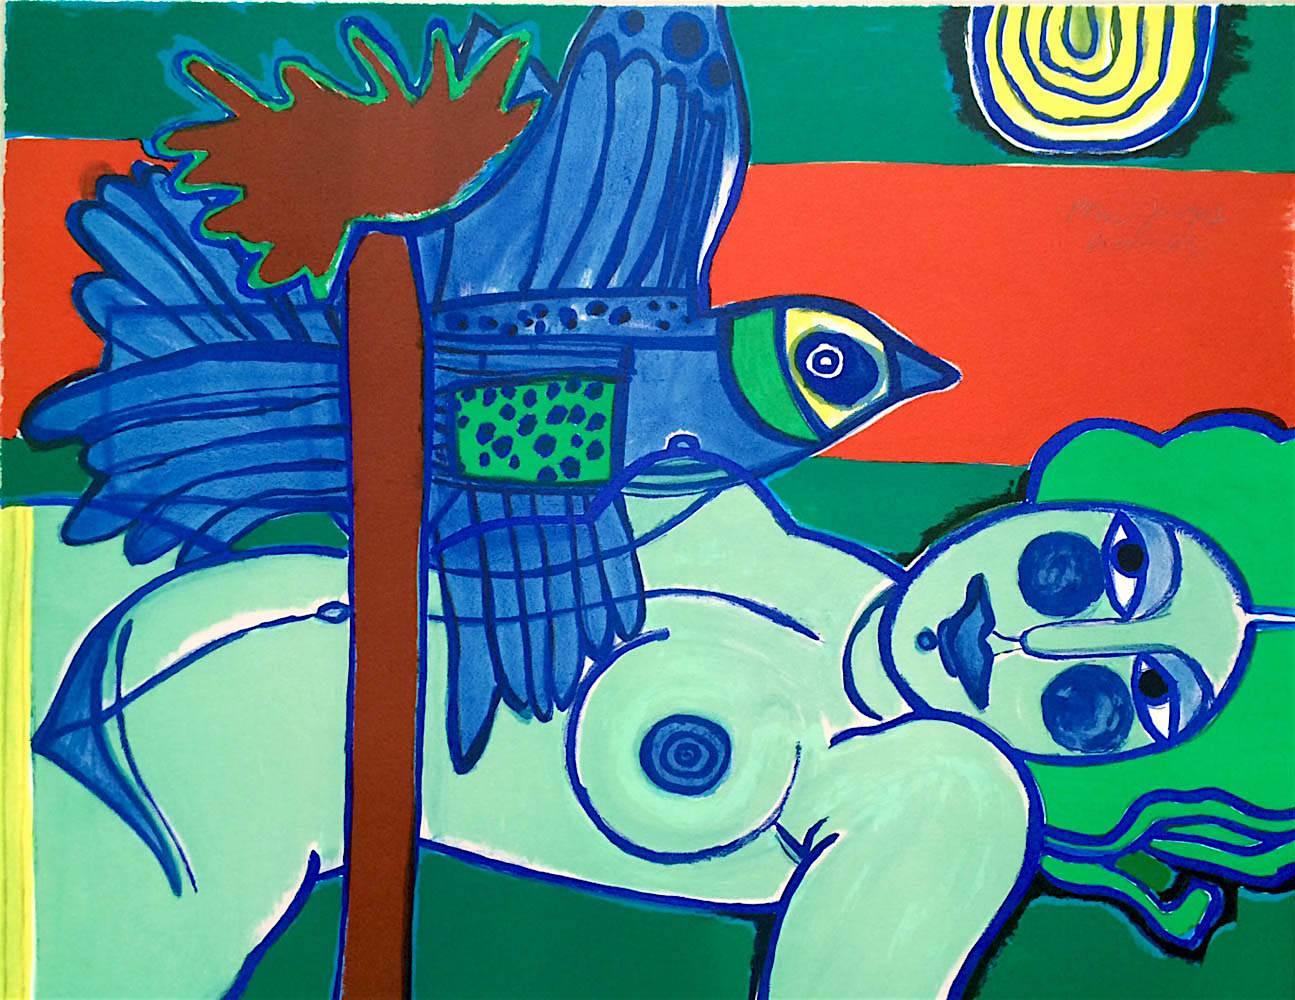 L'Ouverture Sur L'Été, handgezeichnete Lithographie, grüner weiblicher Nude, exotisch-blauer Vogel